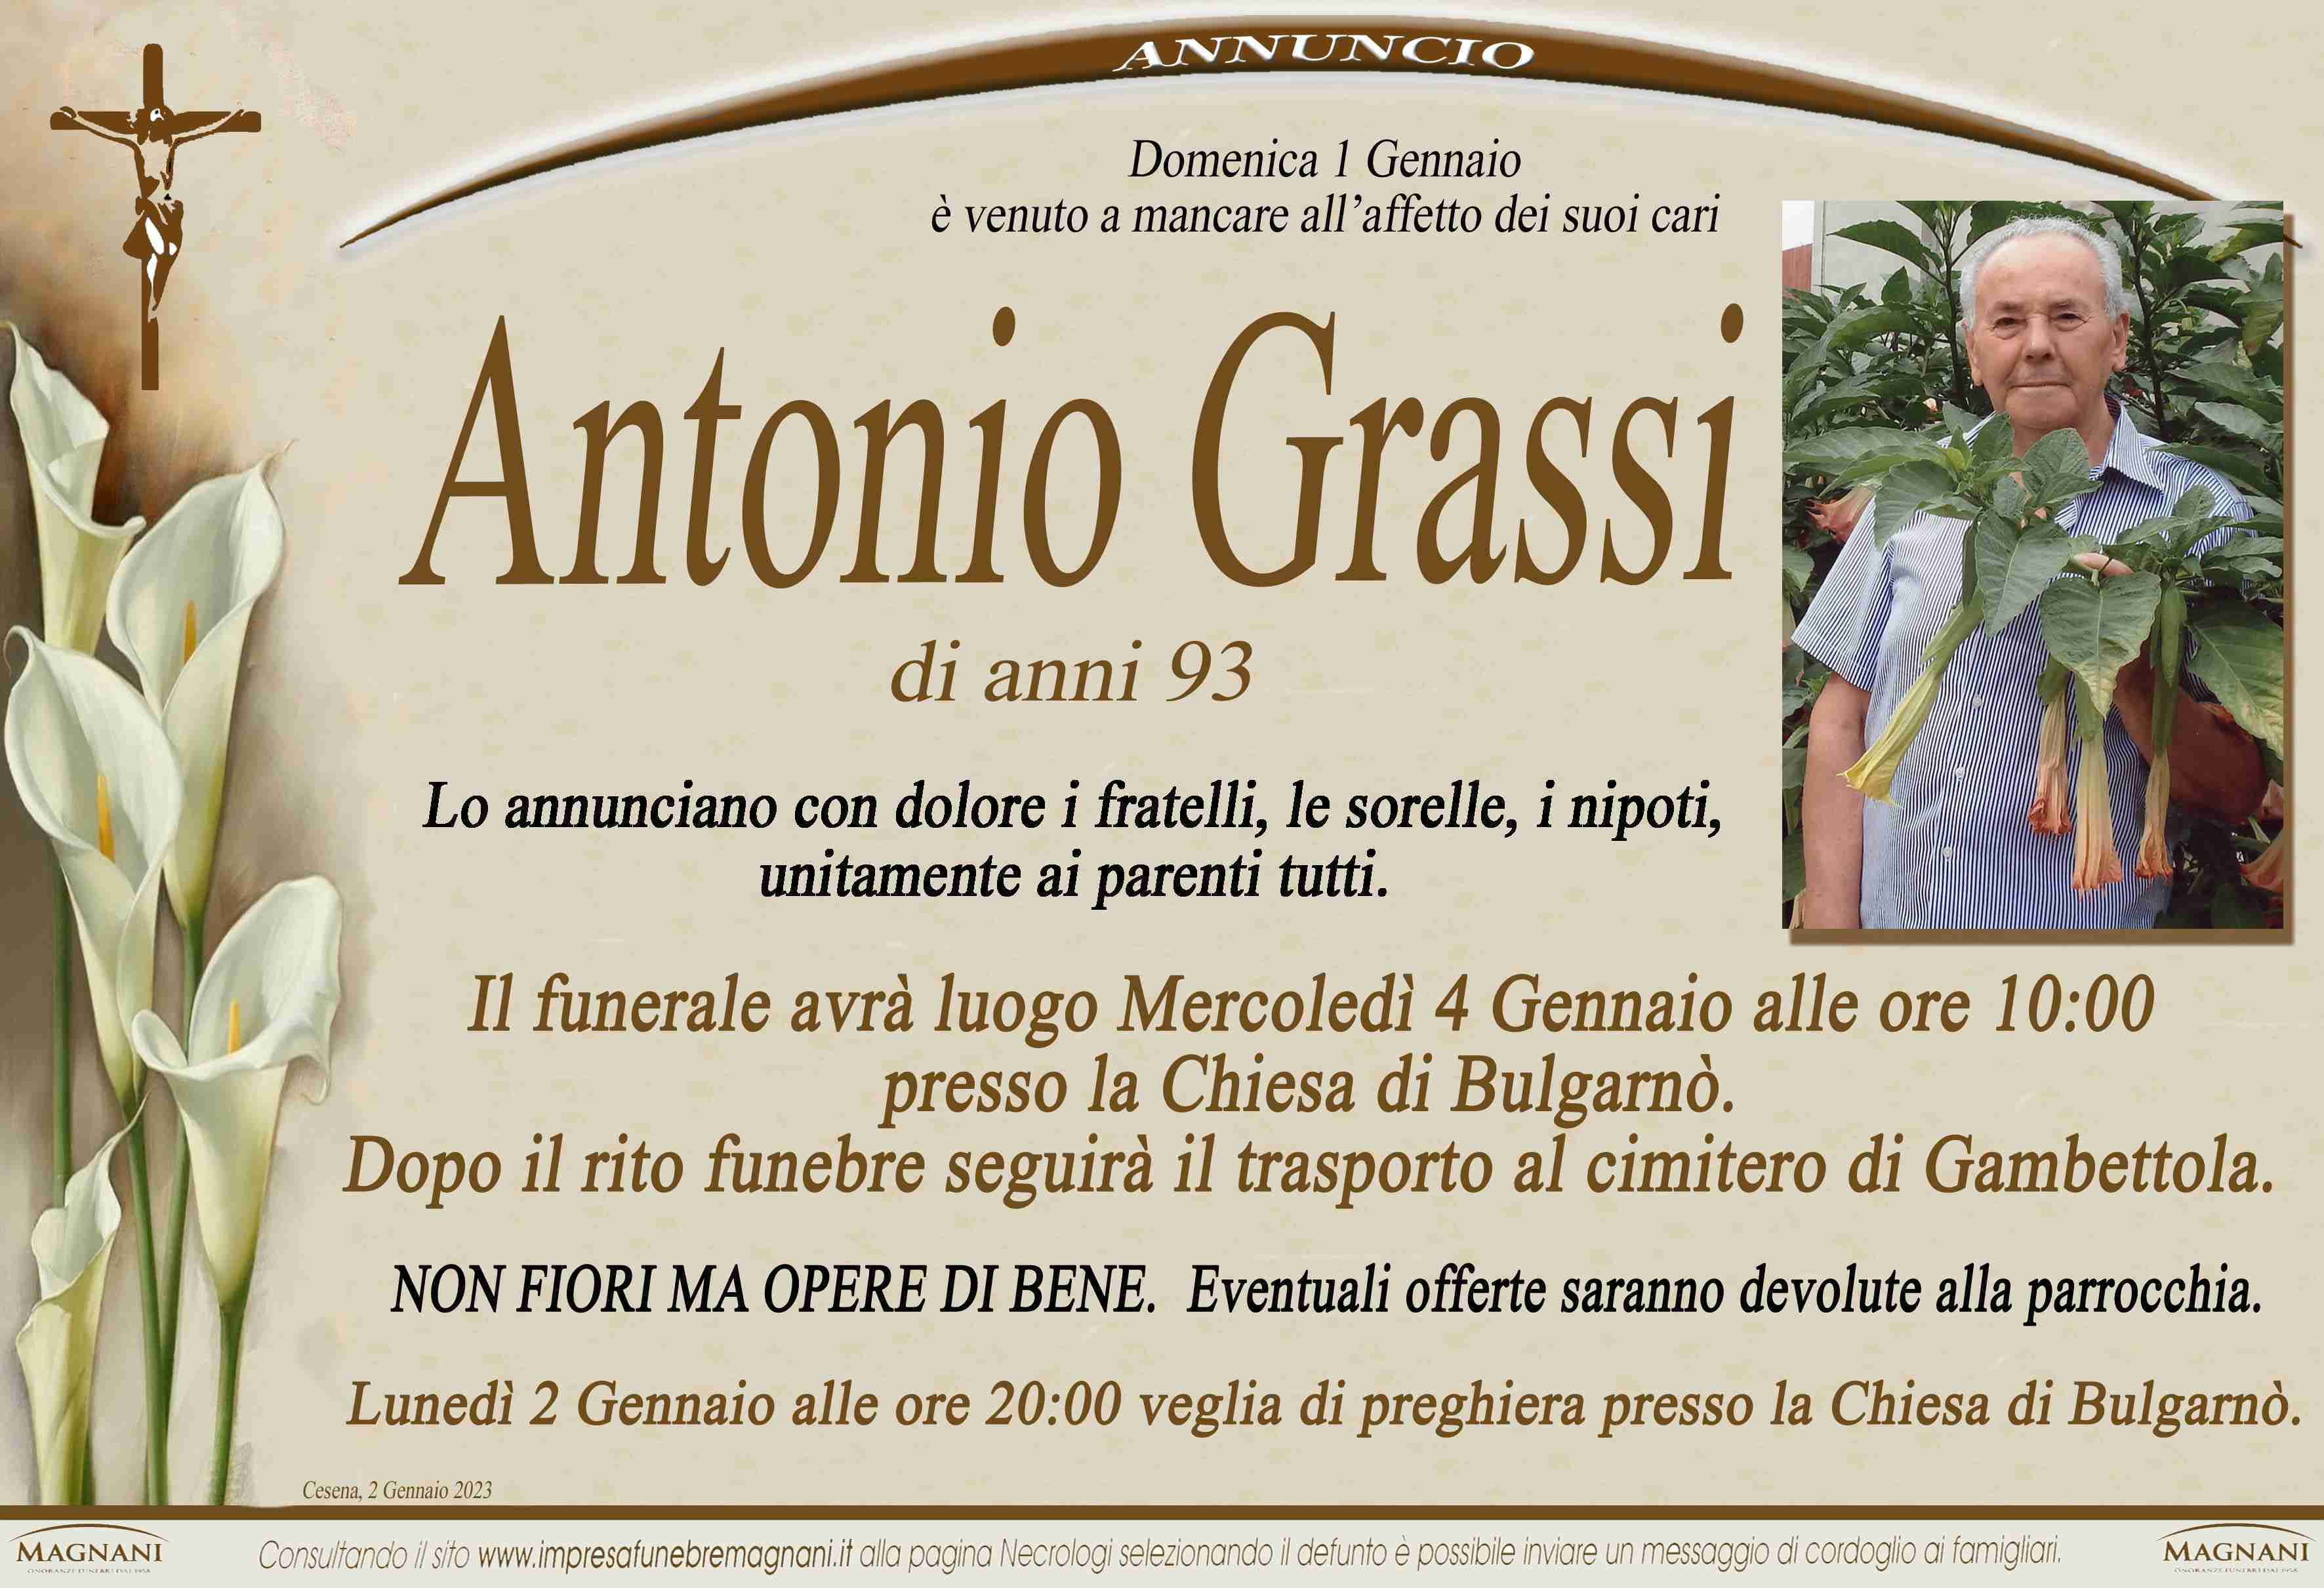 Antonio Grassi